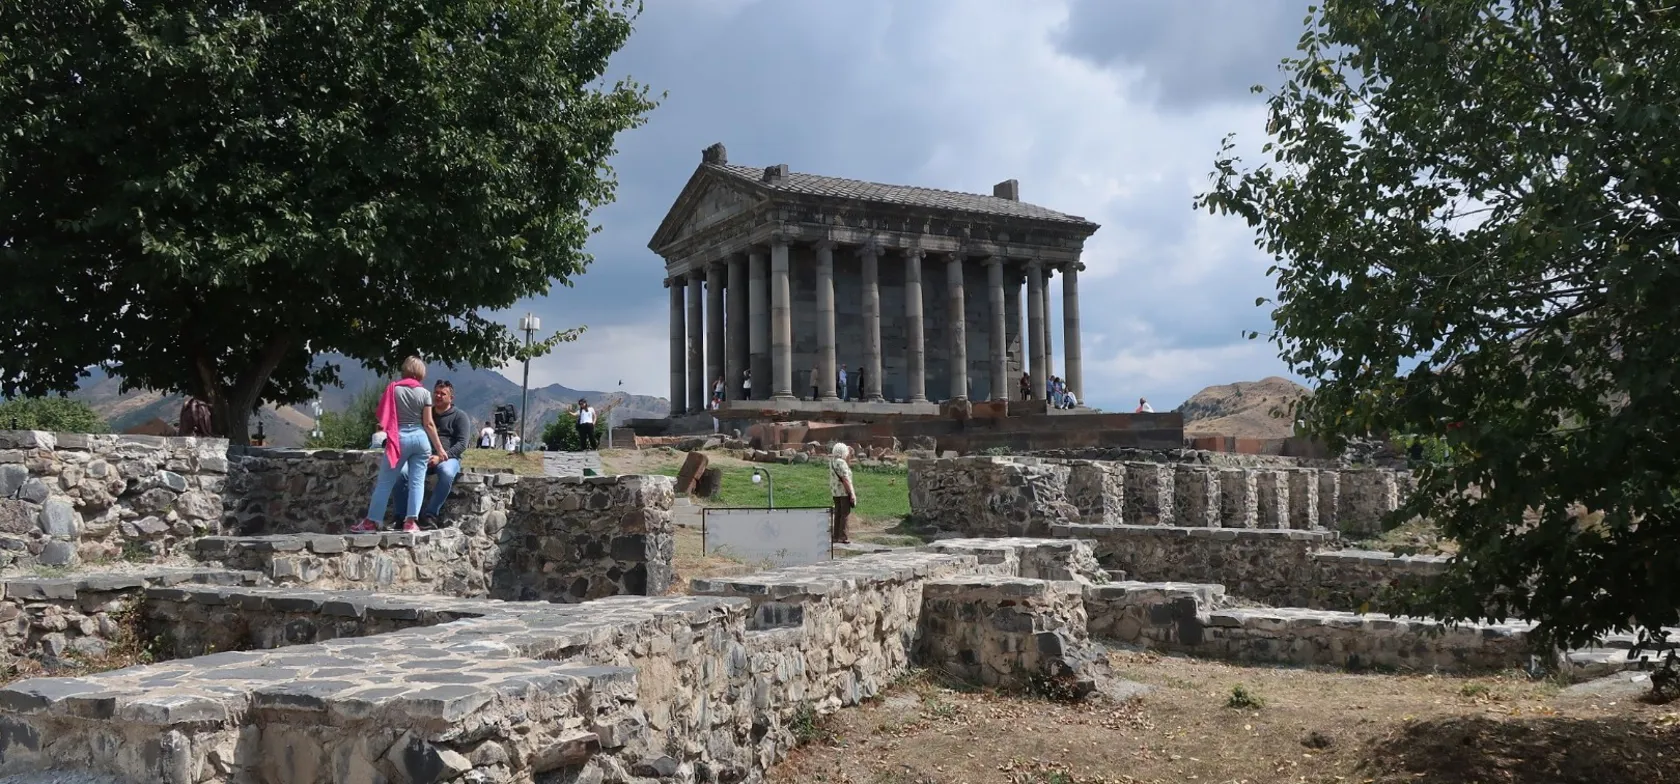 Garni templet er et levn fra en før-kristen tid i Armenien. Foto Thomas Sørensen